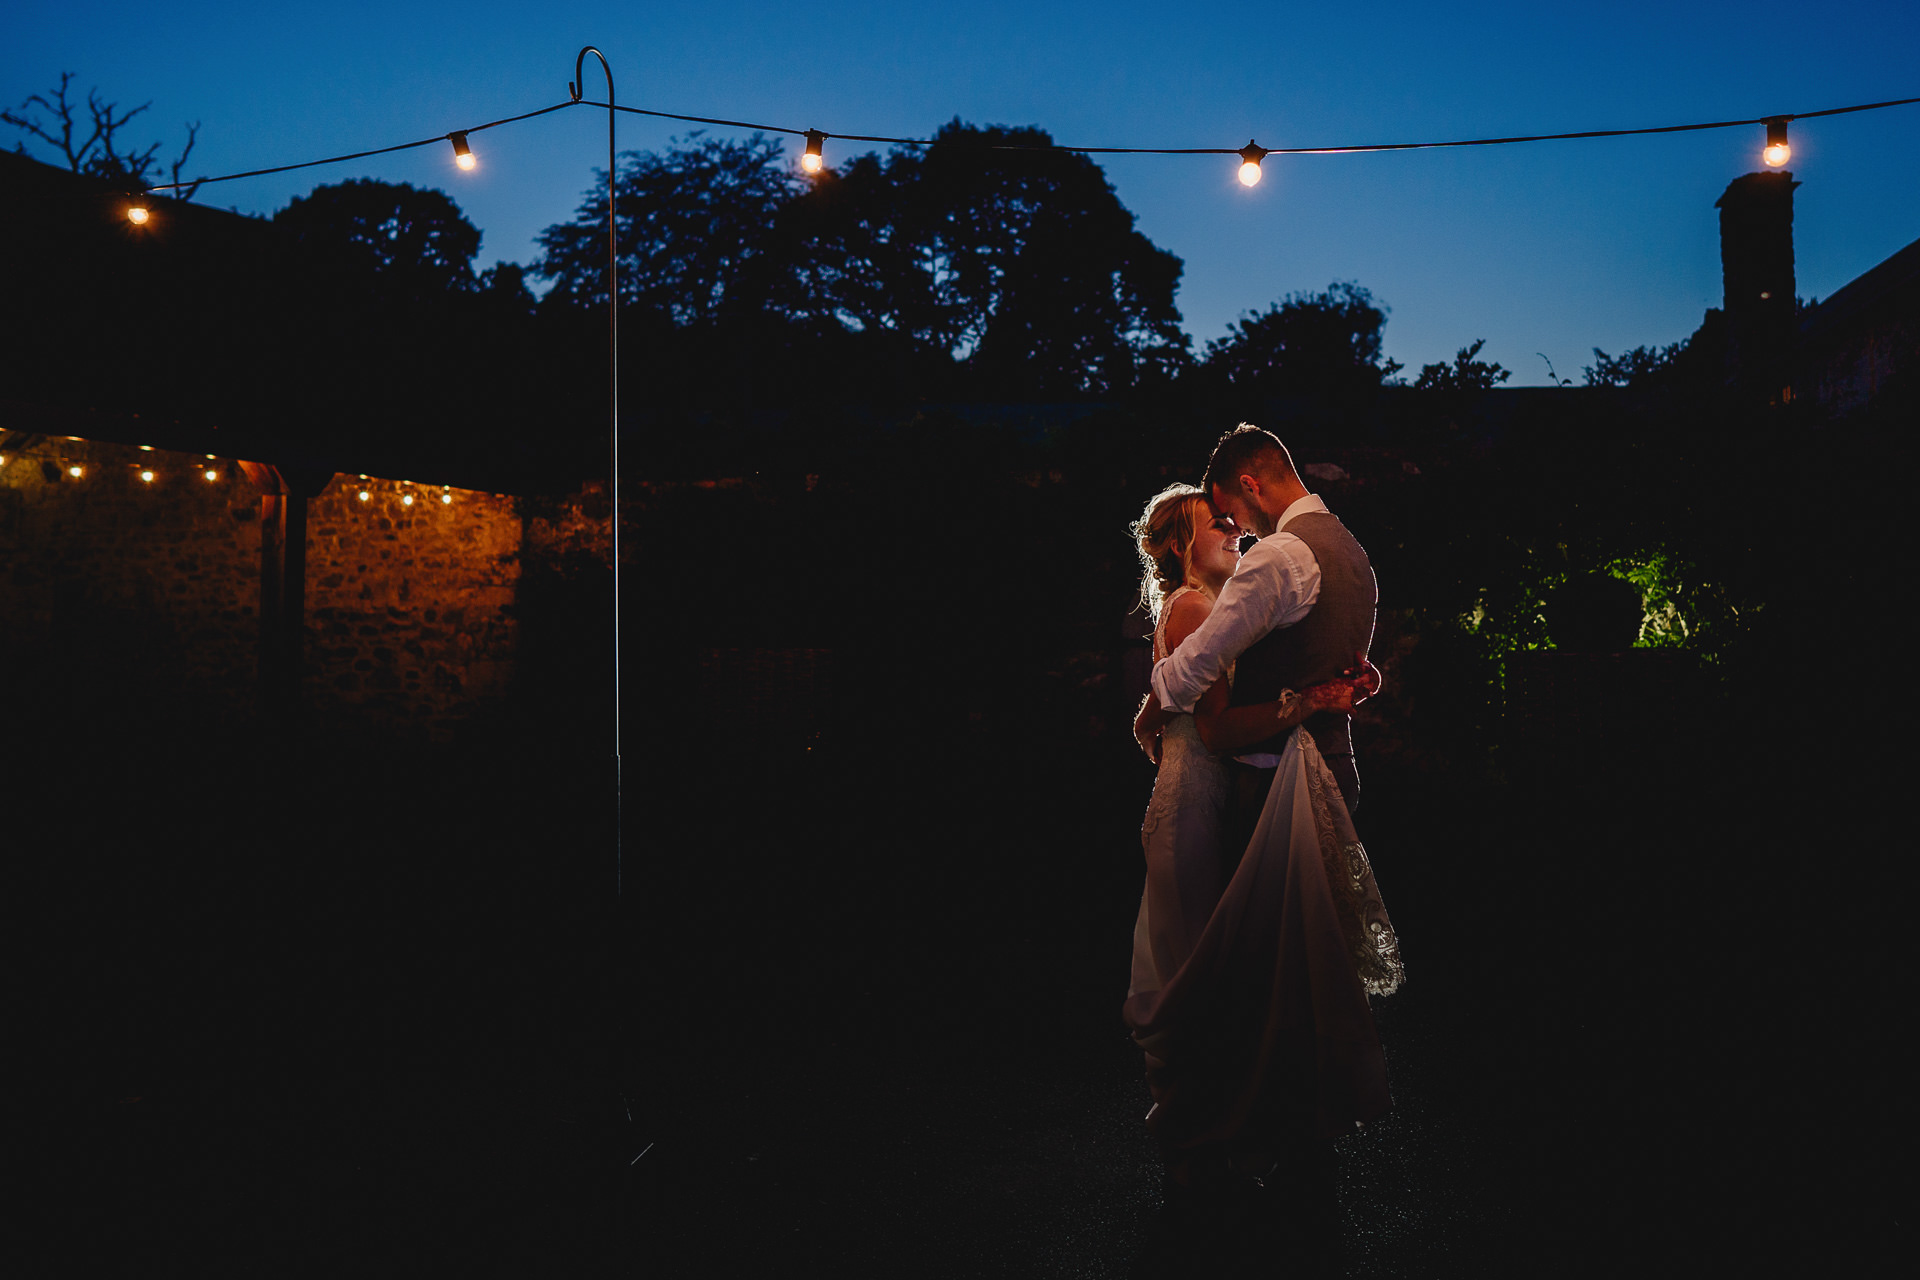 Bride and groom kissing under festoon lights at night